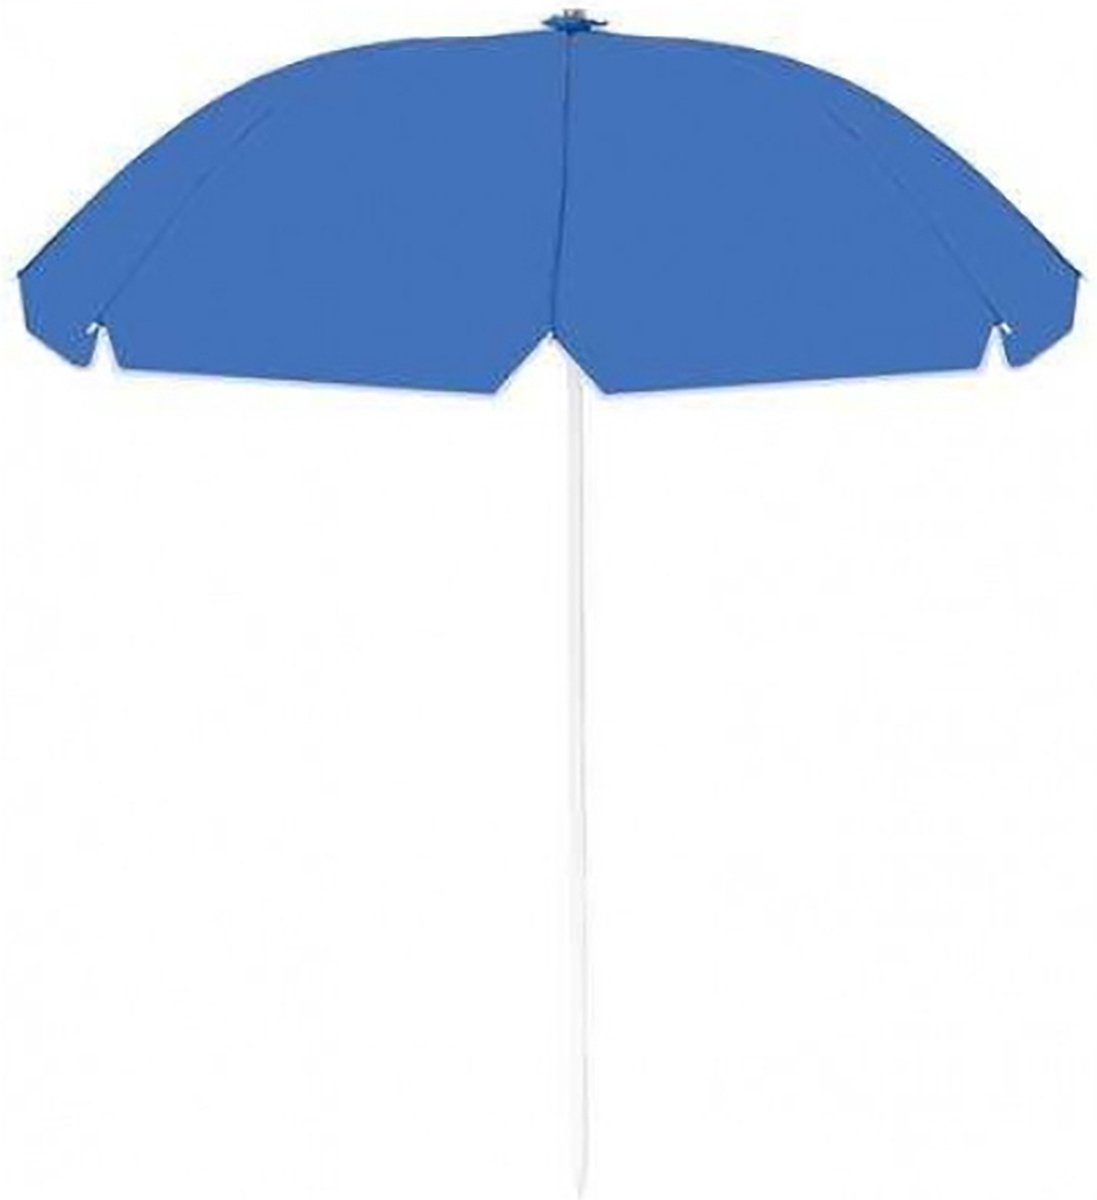 Parasol - Blauw - Rond - zonnescherm - Paraplu - Strand - Tuin - met tas - 200cm